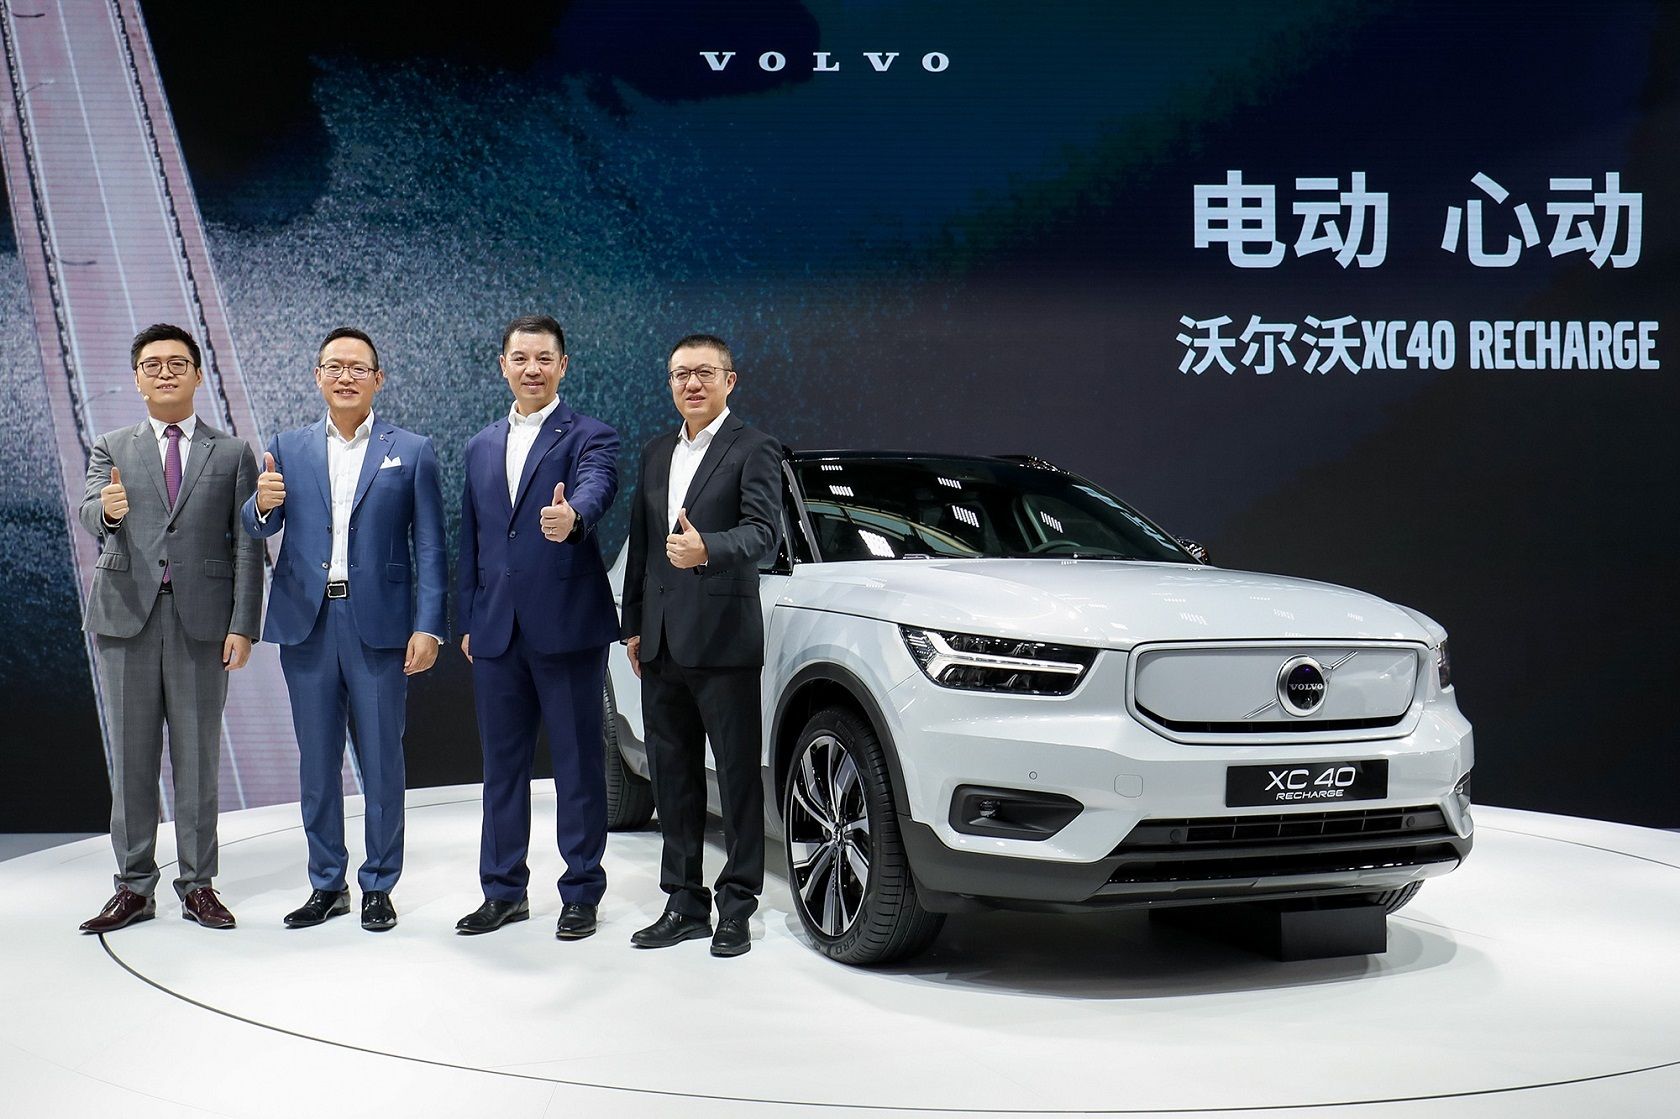 沃尔沃首款纯电动汽车XC40 RECHARGE亮相北京车展